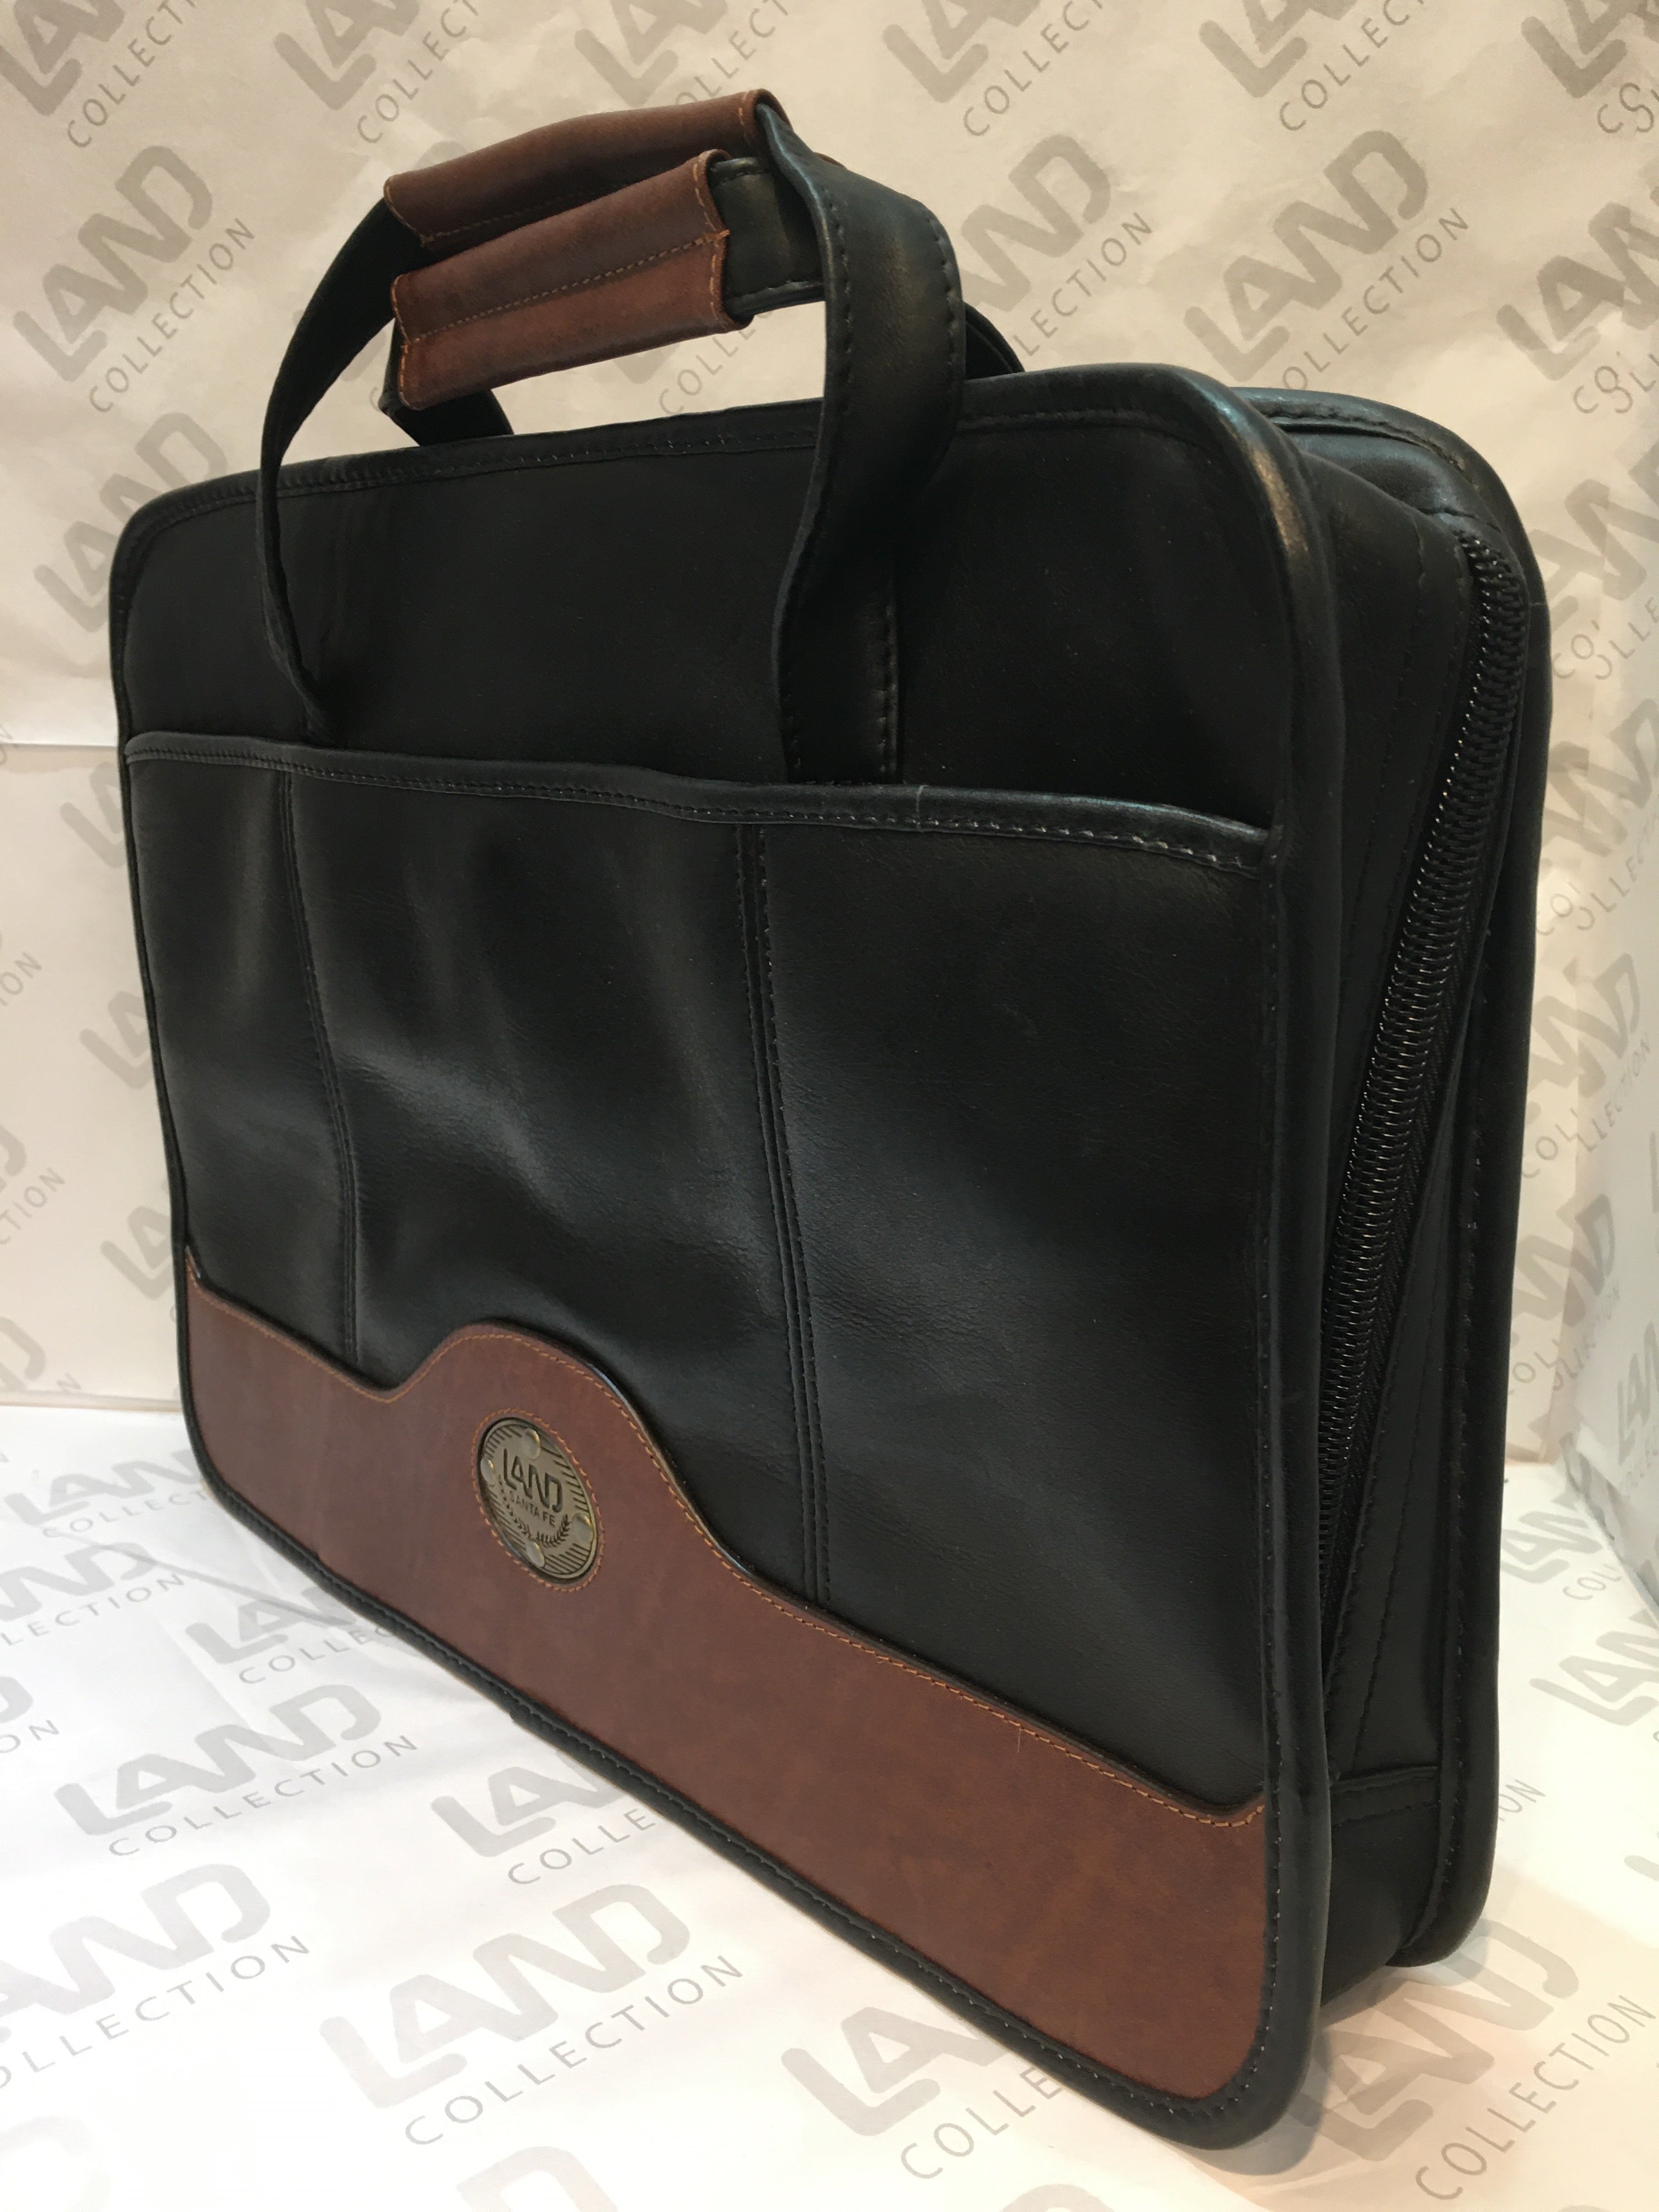 Santa Fe Collection: Slim Brief Bag